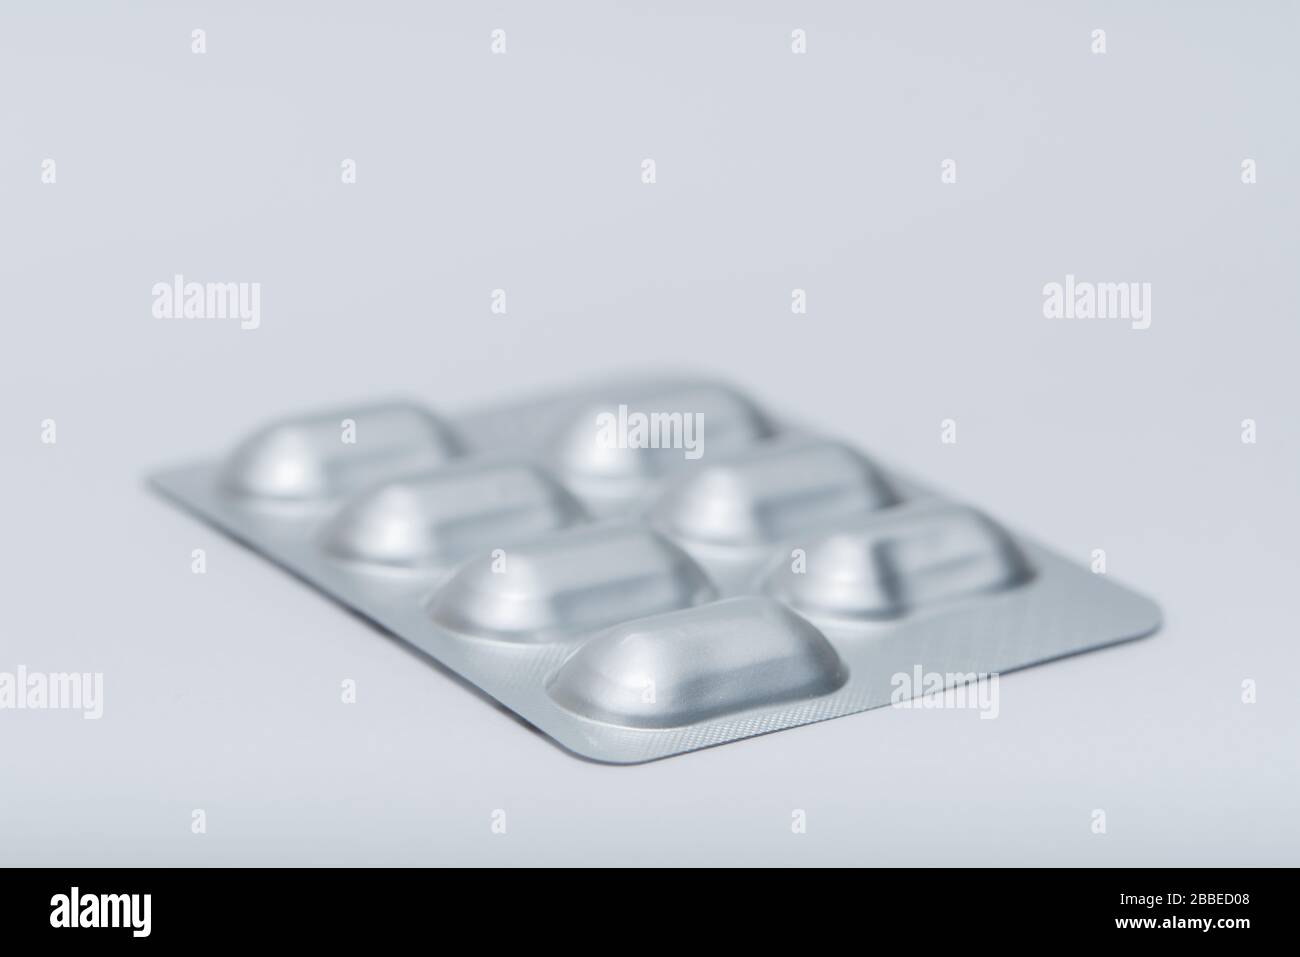 Compresse Blister Confezione per farmaci: Antidolorifici